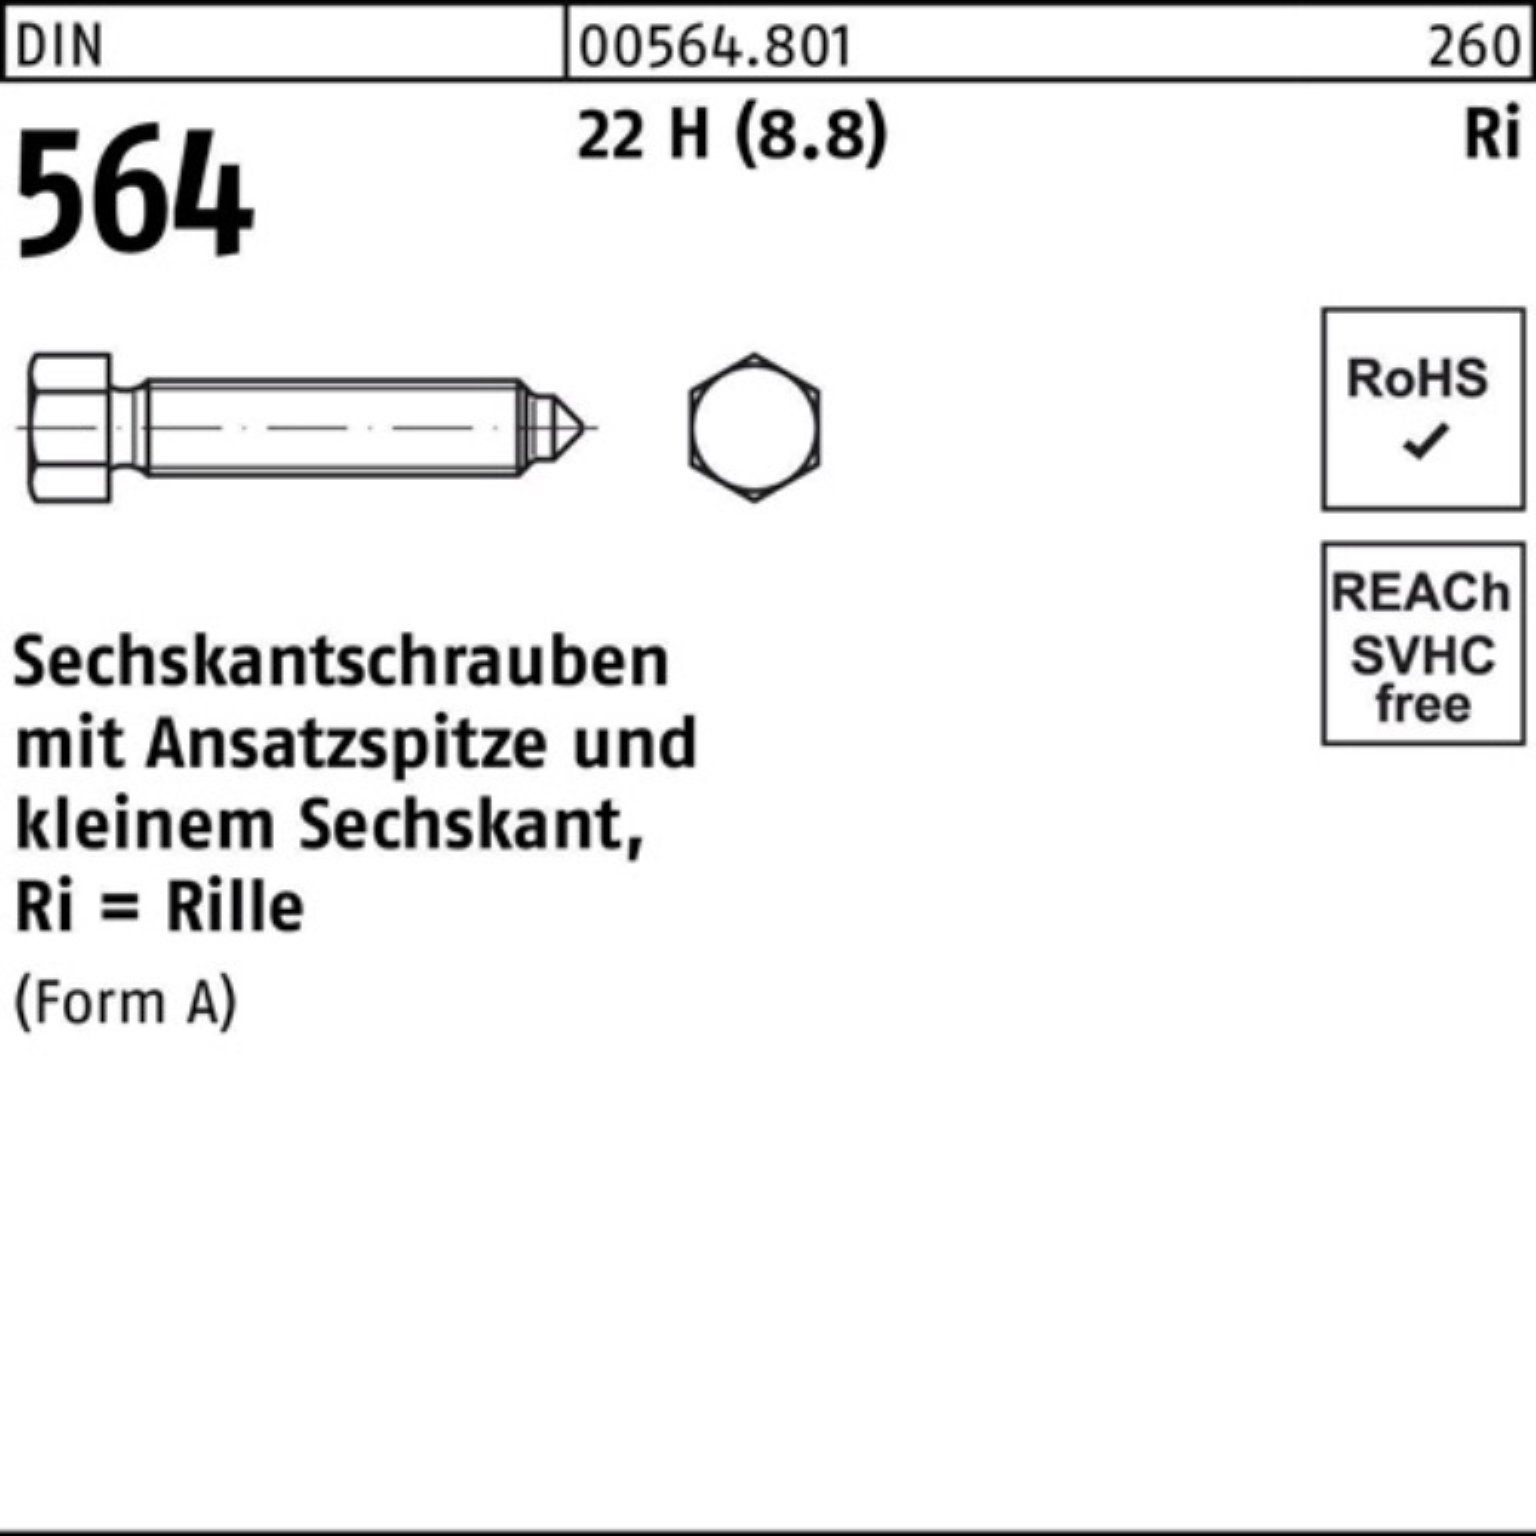 Reyher Sechskantschraube 100er Pack Sechskantschraube DIN 564 Ansatzspitze AM 8x 40 22 H (8.8)